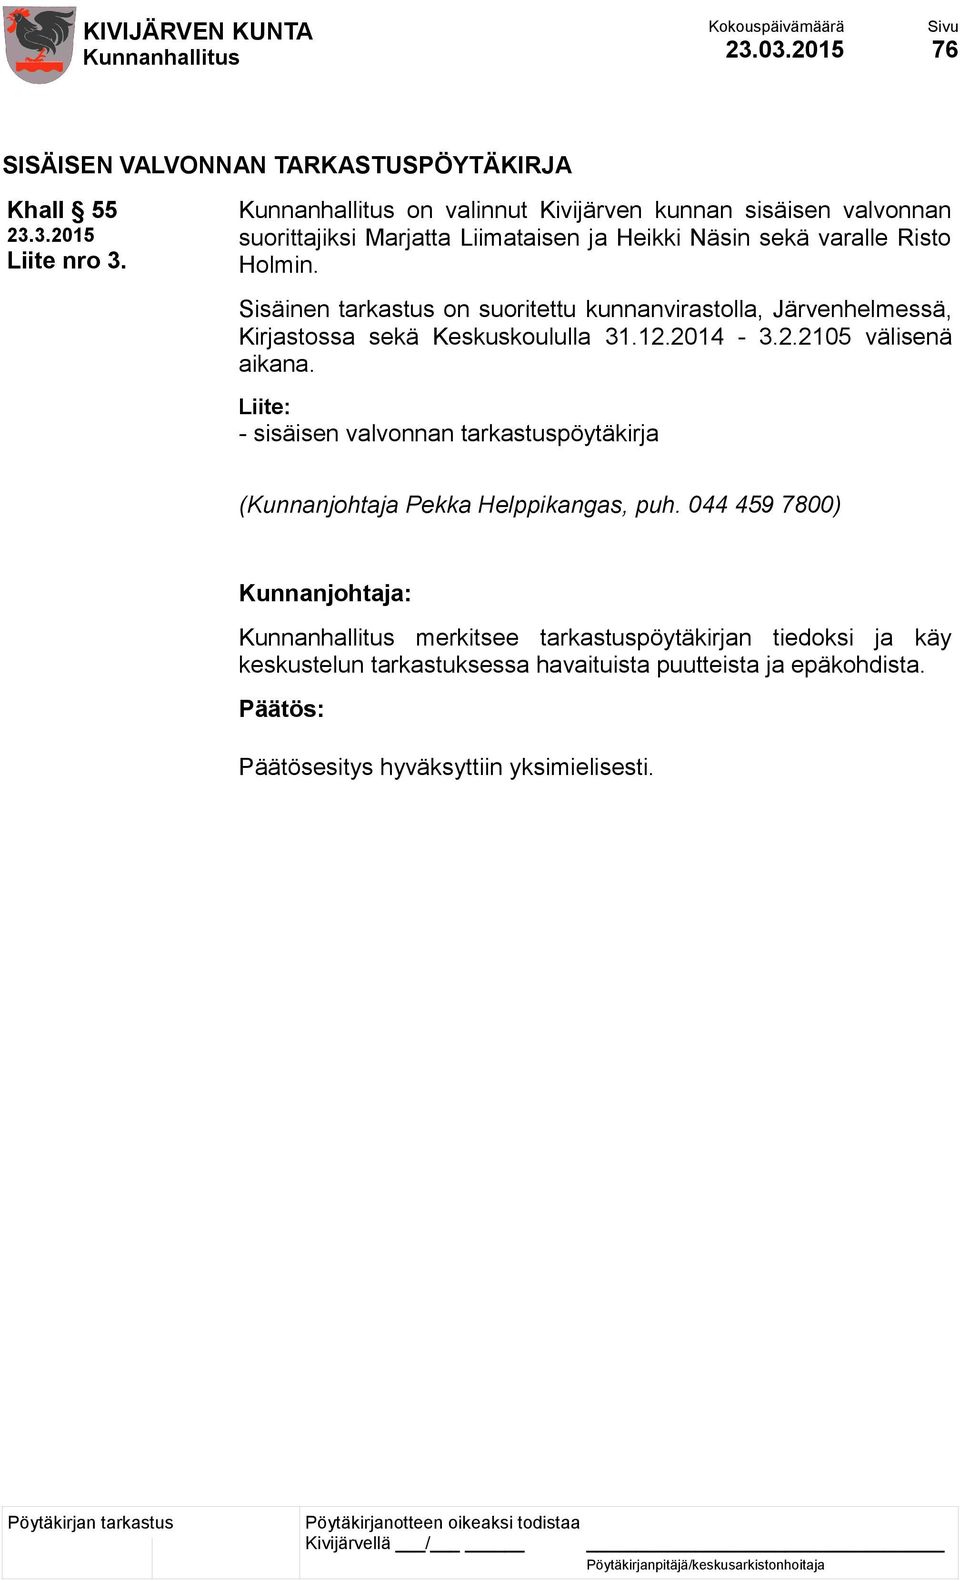 Sisäinen tarkastus on suoritettu kunnanvirastolla, Järvenhelmessä, Kirjastossa sekä Keskuskoululla 31.12.2014-3.2.2105 välisenä aikana.